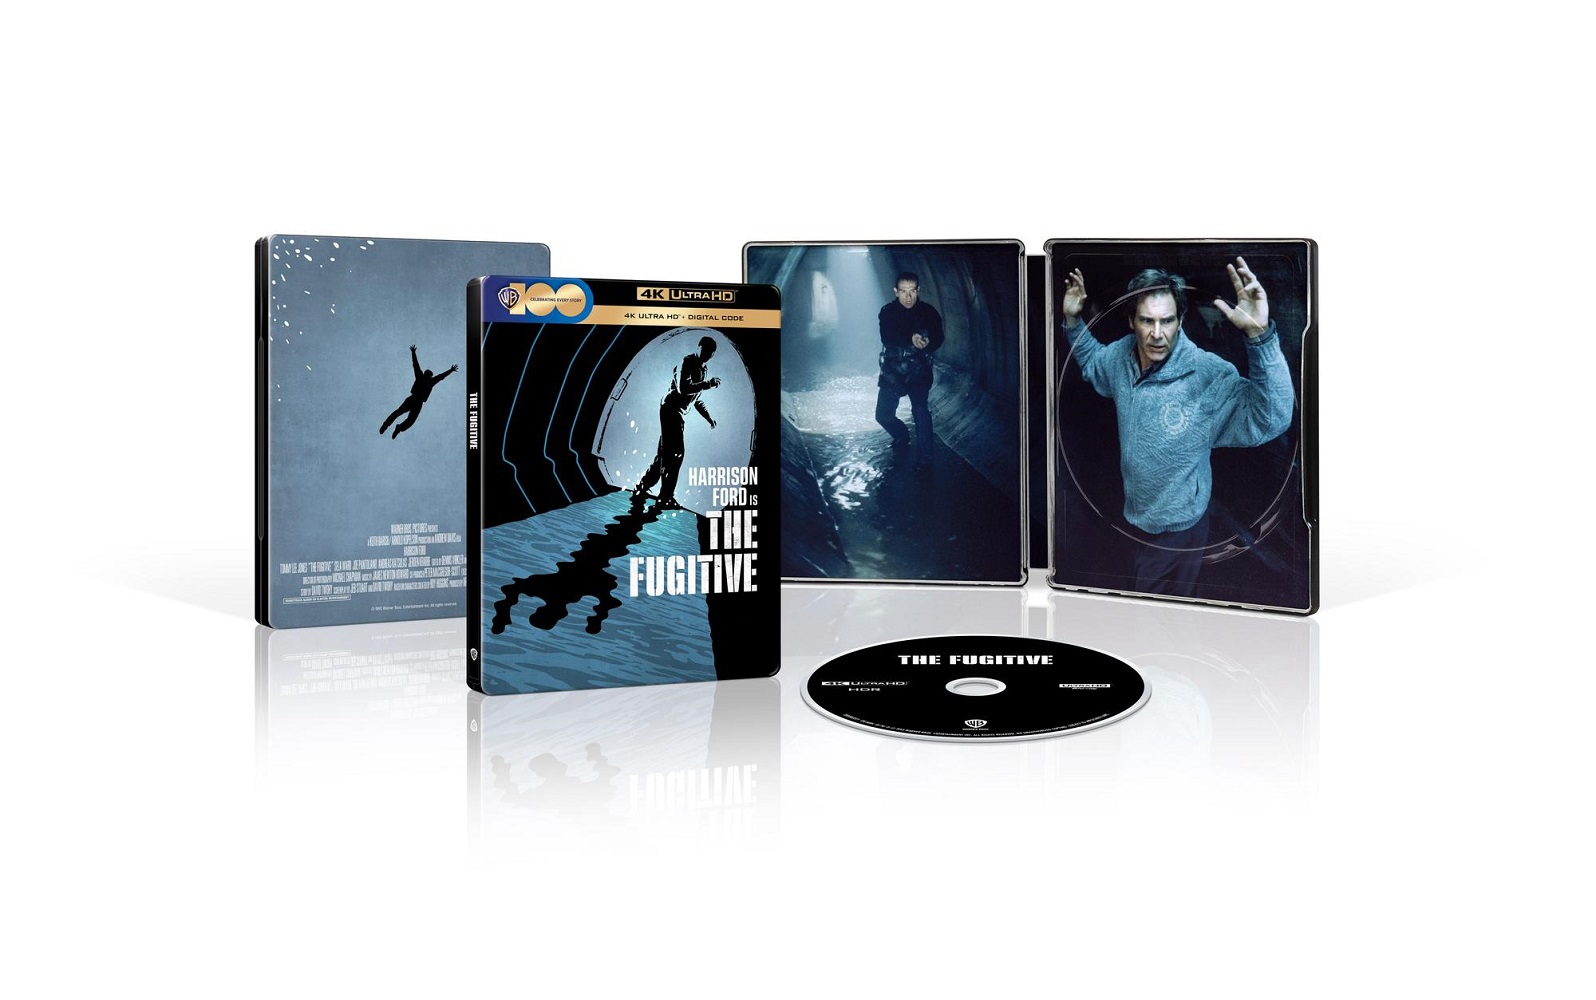 The Fugitive [Includes Digital Copy] [SteelBook] [4k Ultra HD Blu-ray]  [Only @ Best Buy] - Best Buy